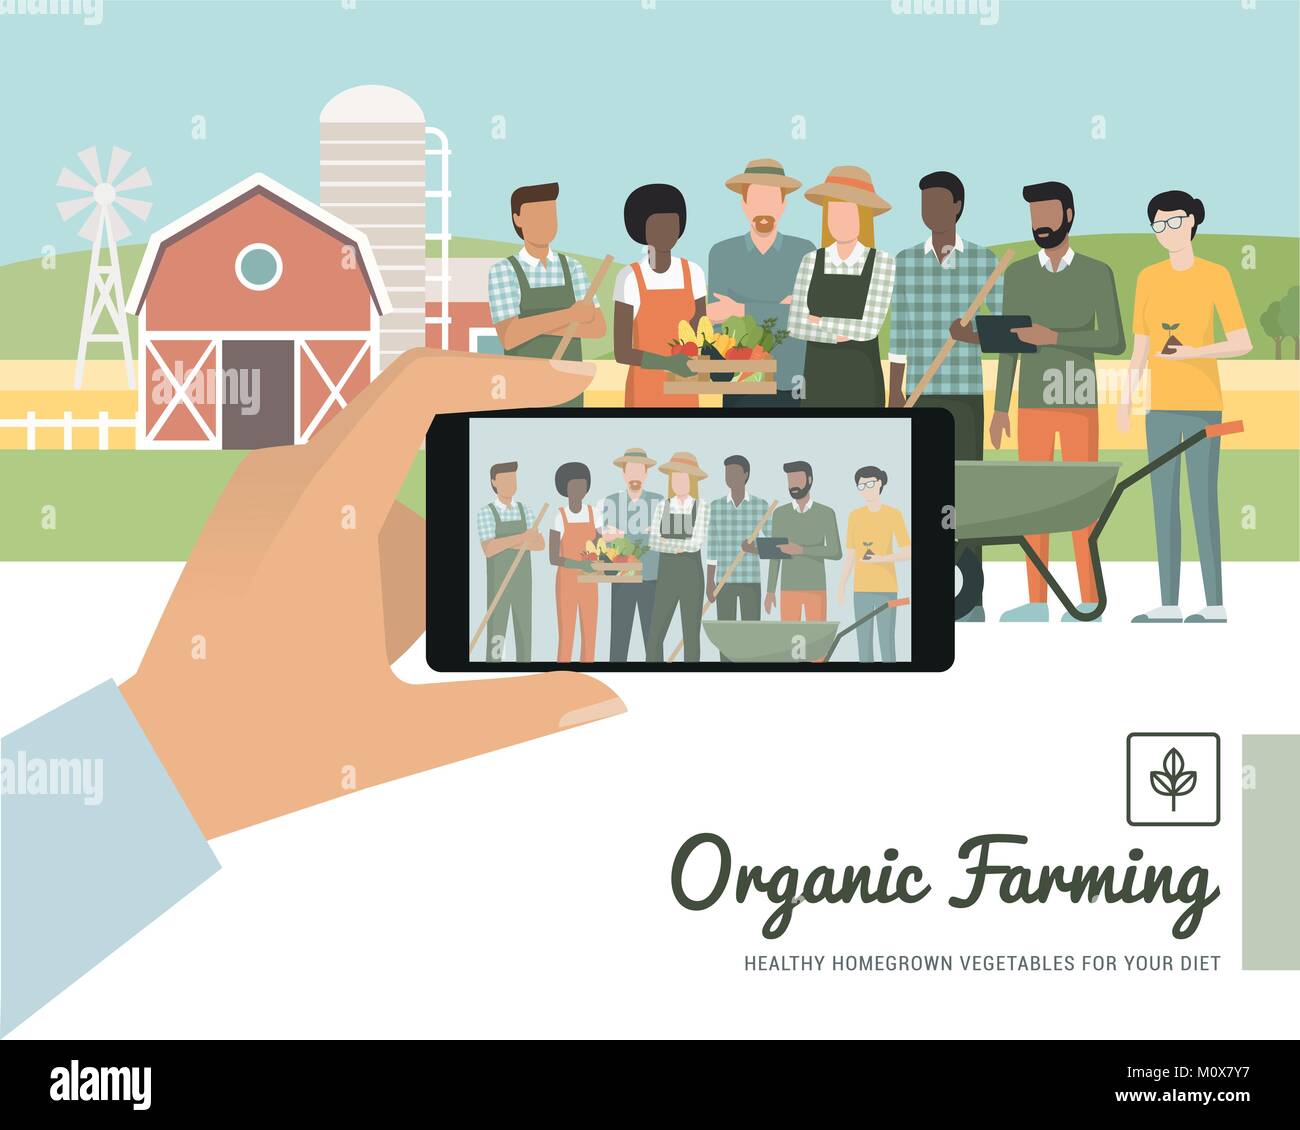 Multi-etico gruppo di agricoltori che presentano insieme alla fattoria, un uomo sta facendo un ritratto utilizzando uno smartphone, un punto di vista soggettivo Illustrazione Vettoriale